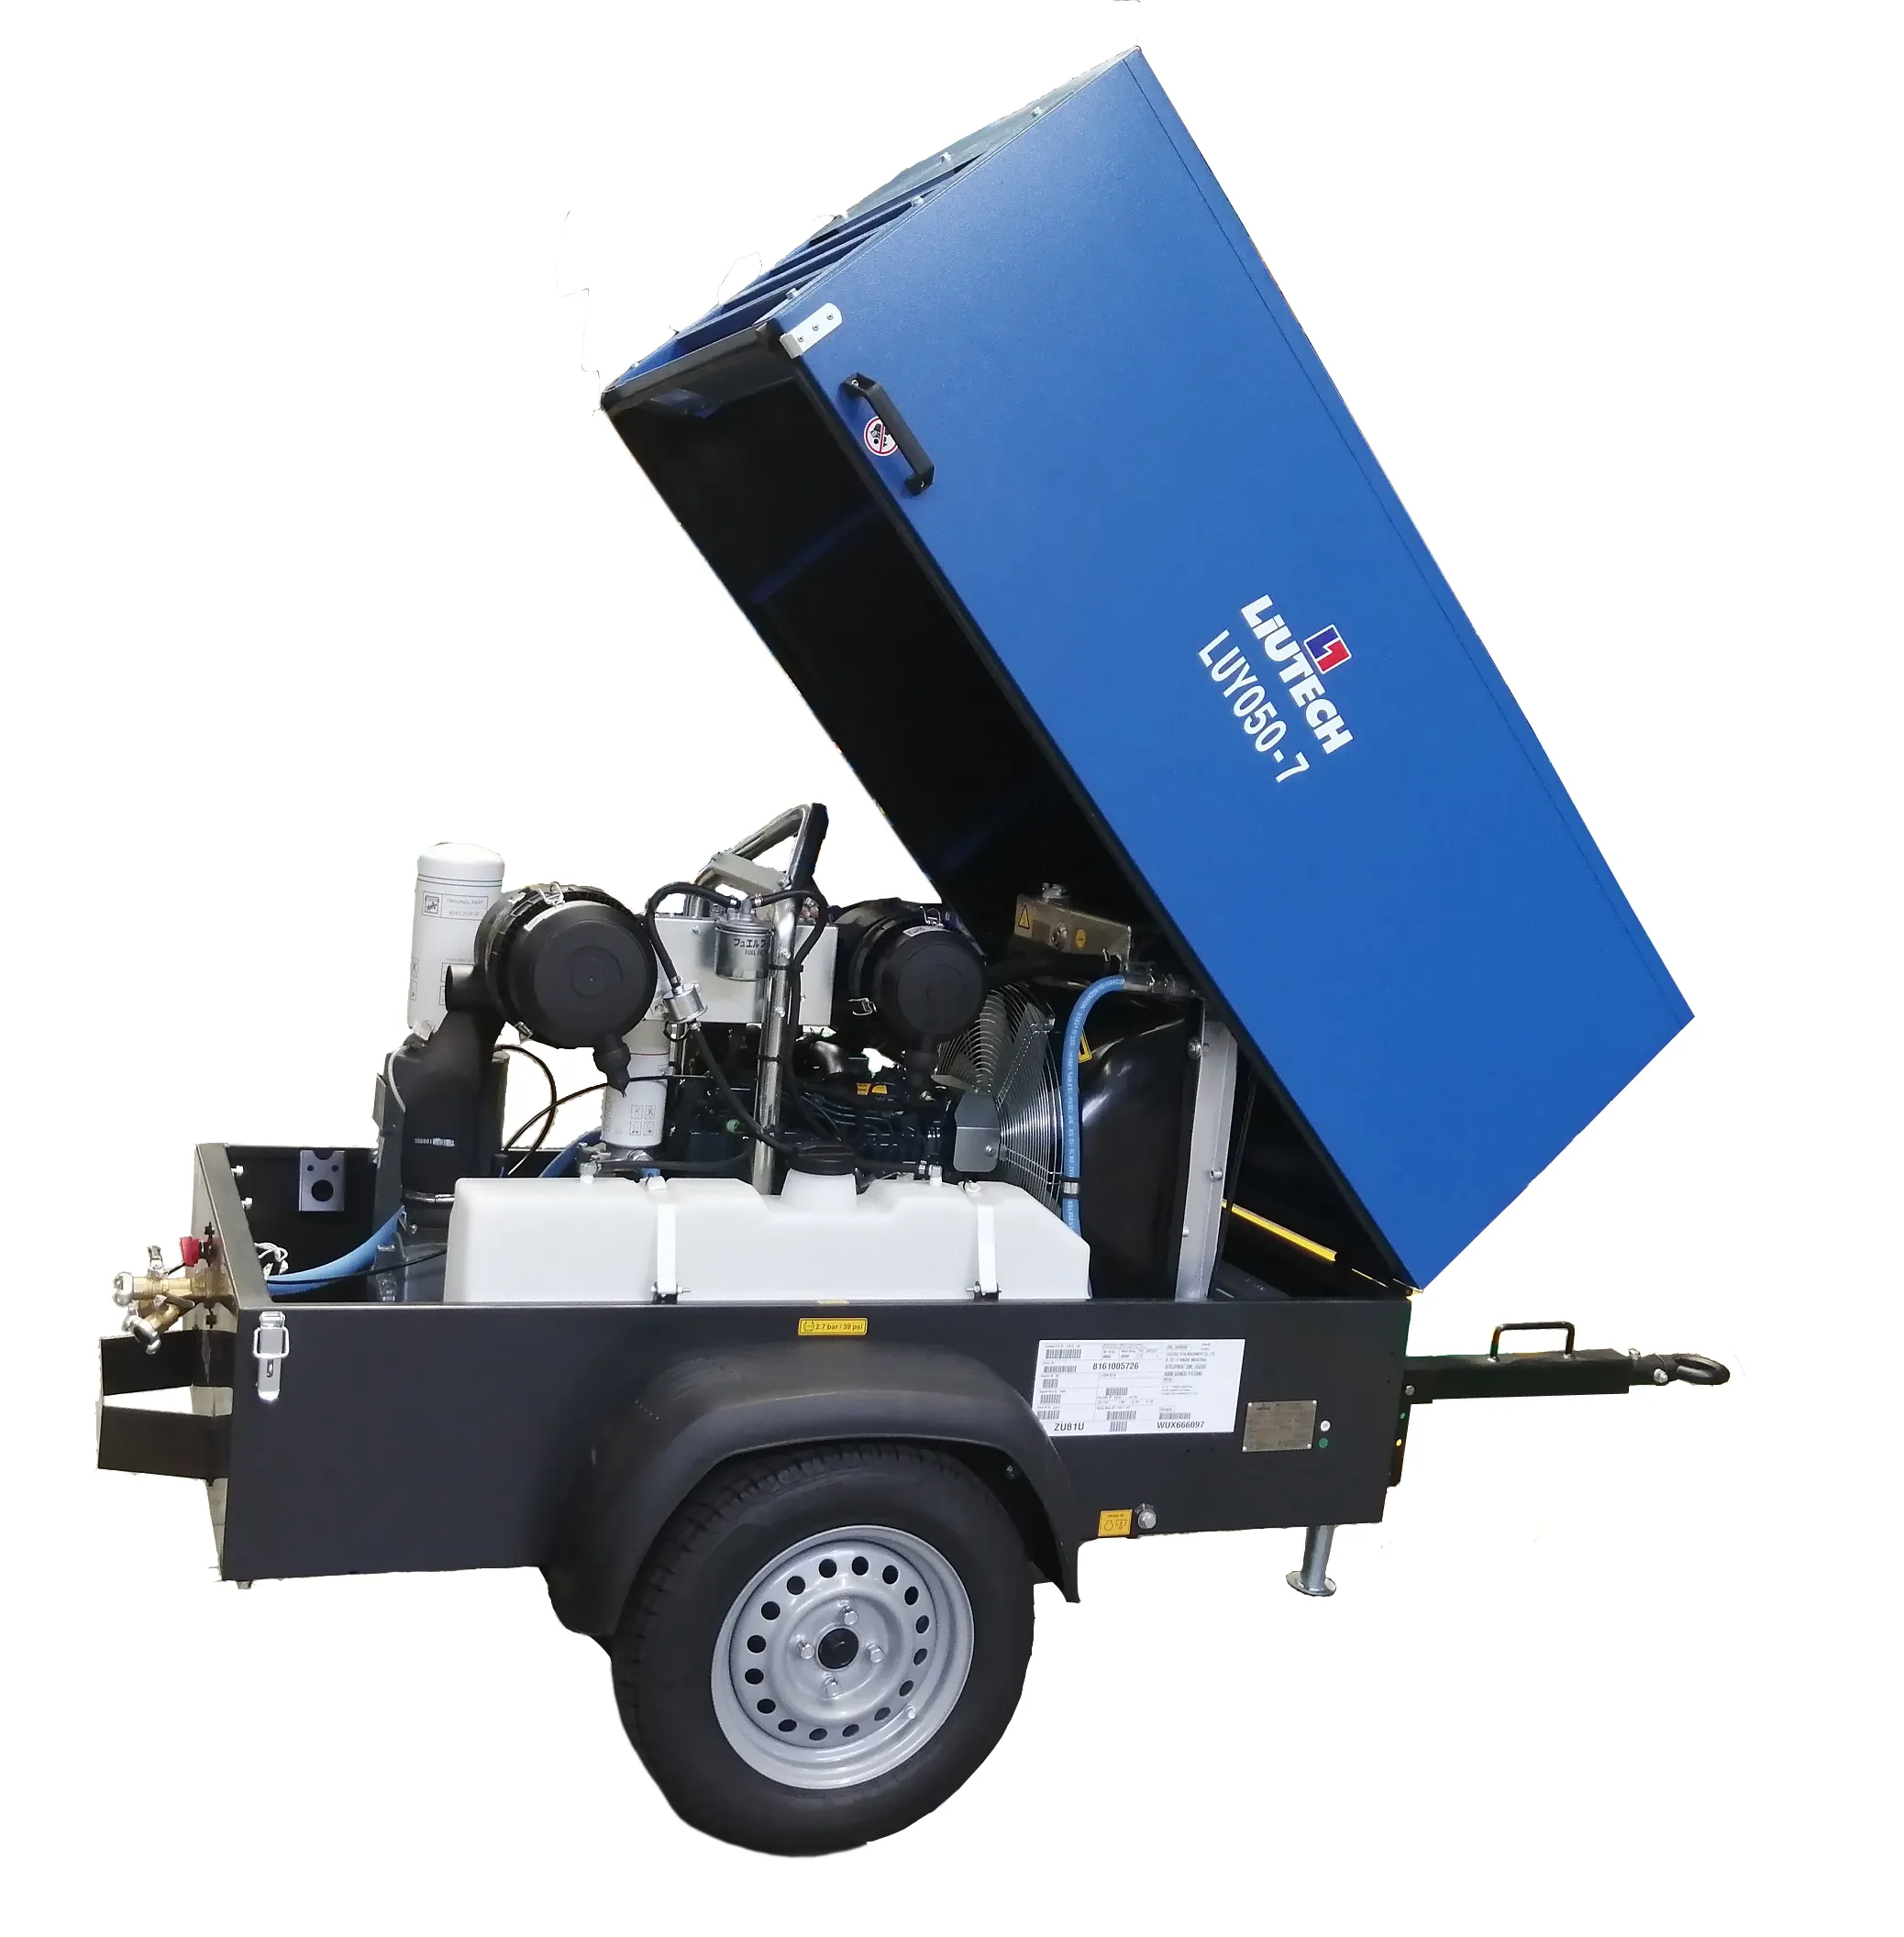 Liutech LUY050-7 175 Cfm Kompresor Udara Kecil Portabel untuk Pekerjaan Konstruksi Kecil